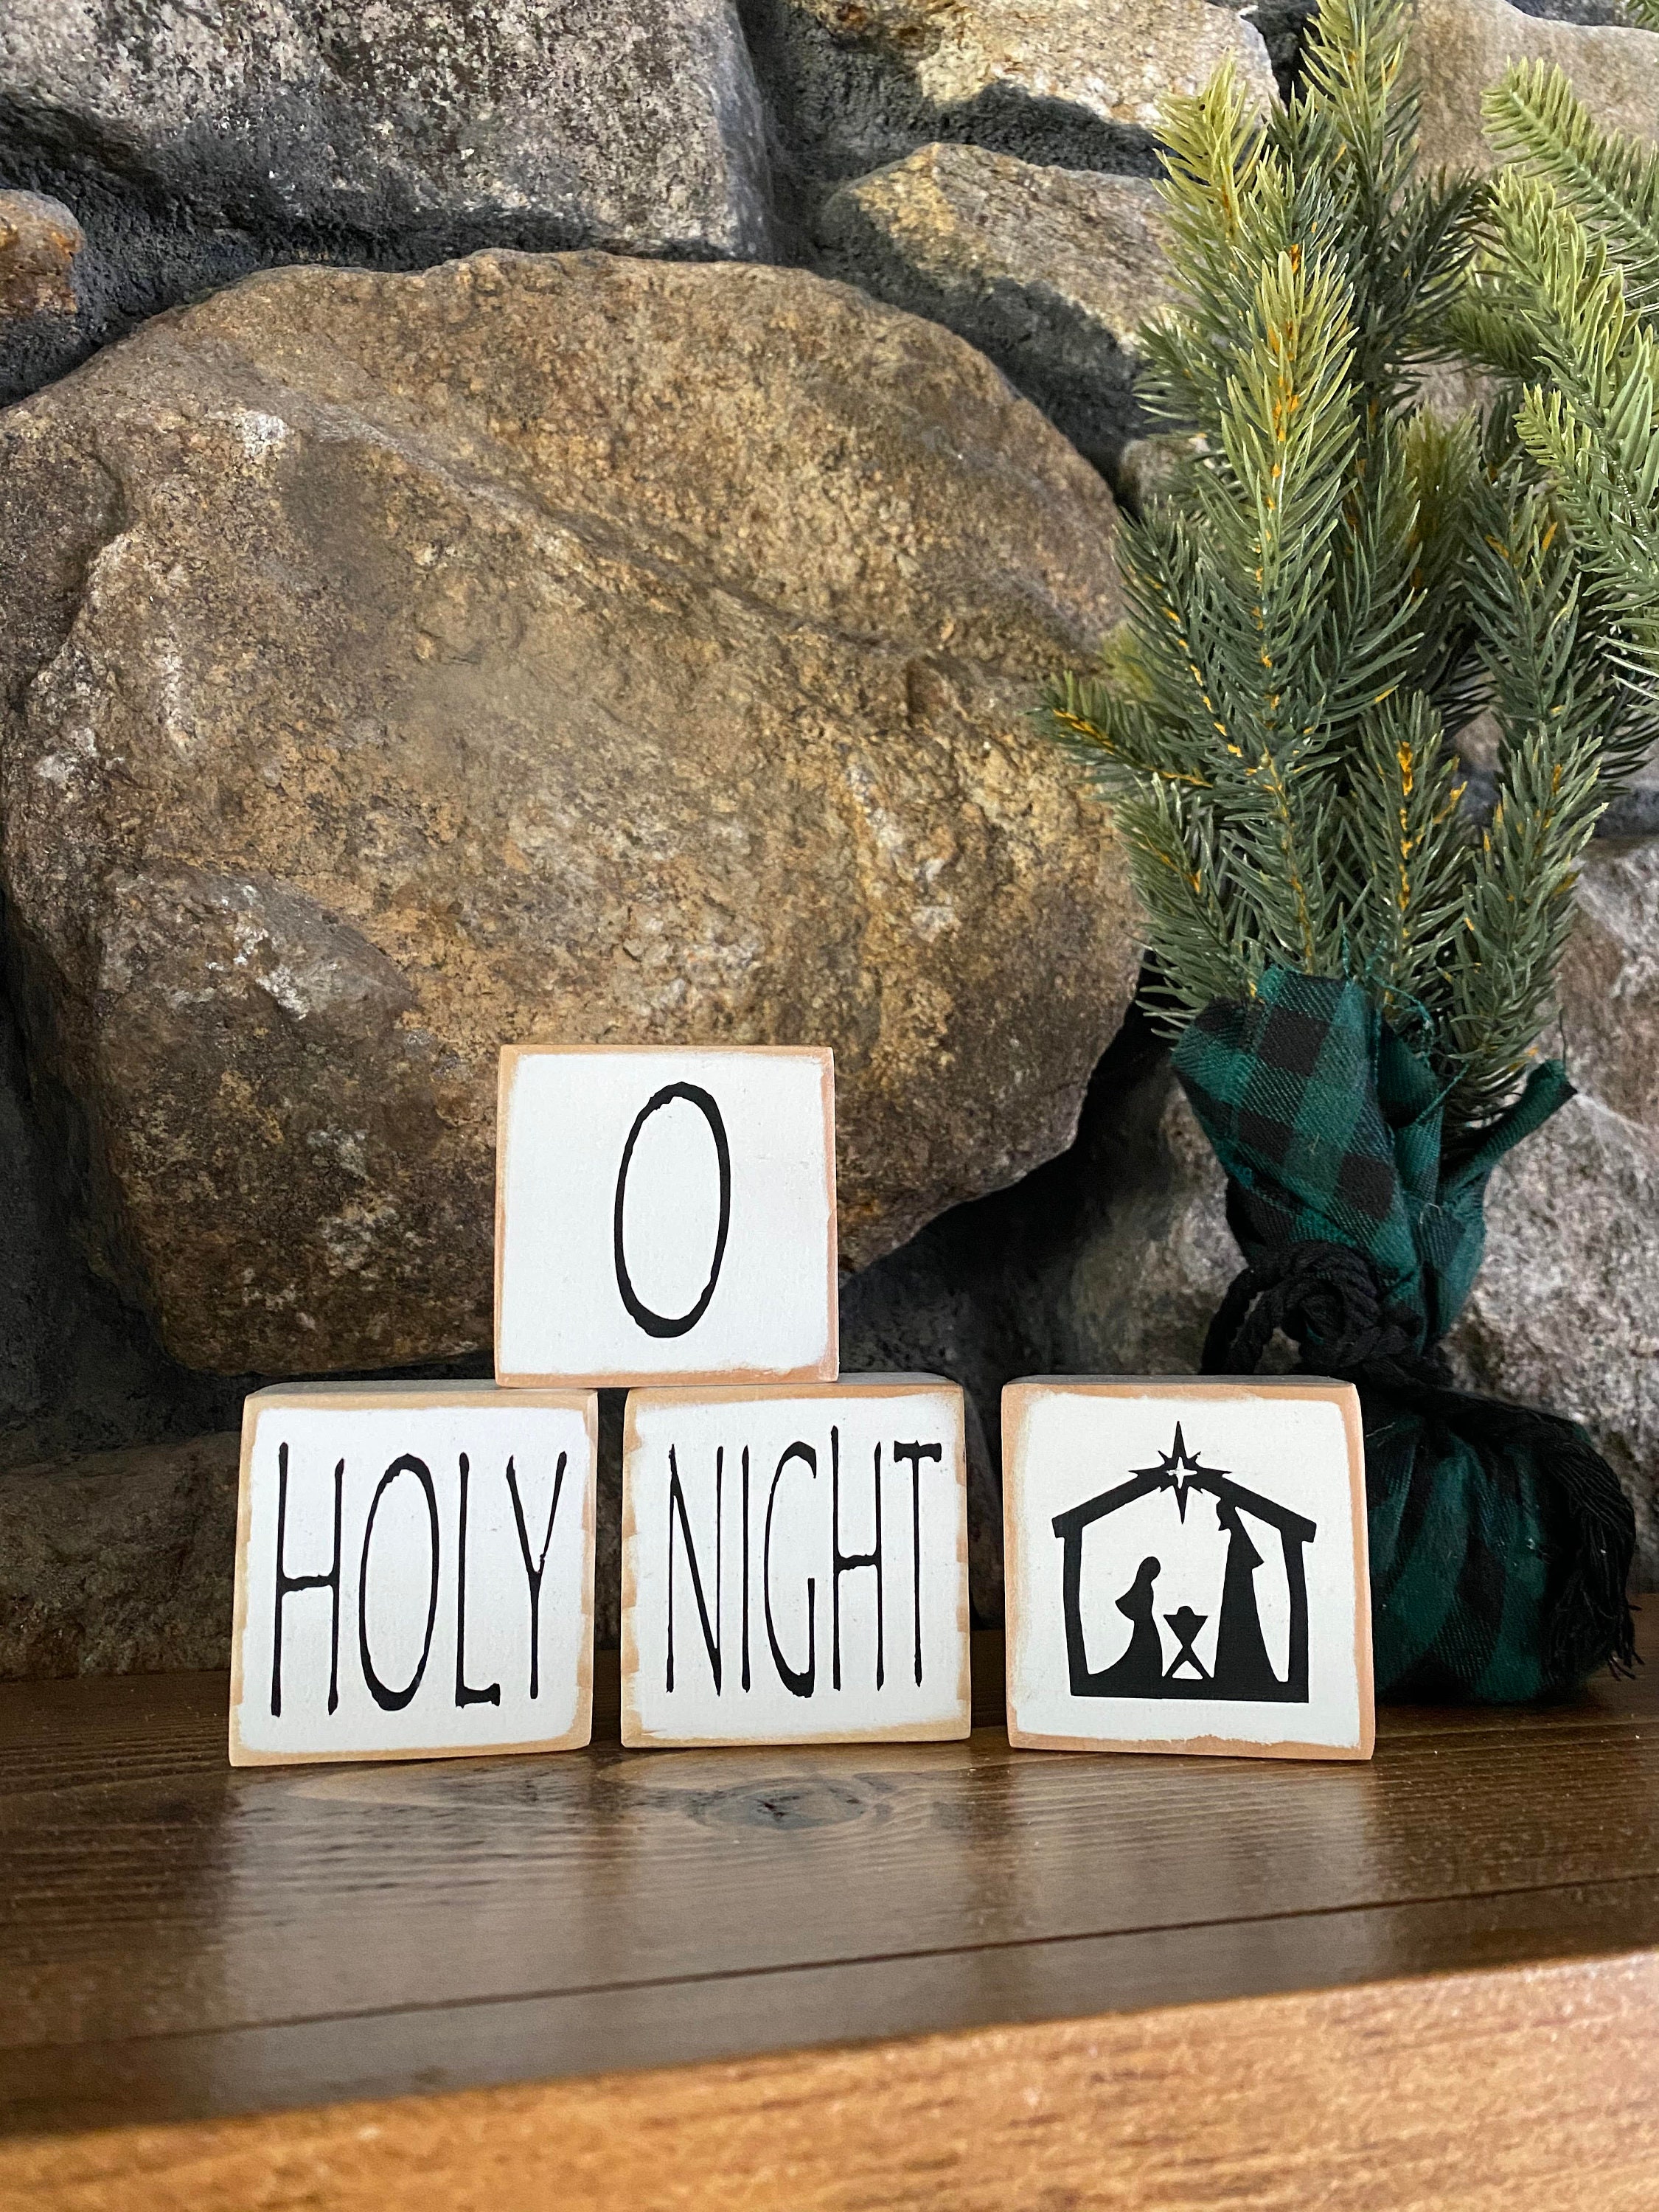 Nativity Oh Holy Night Block